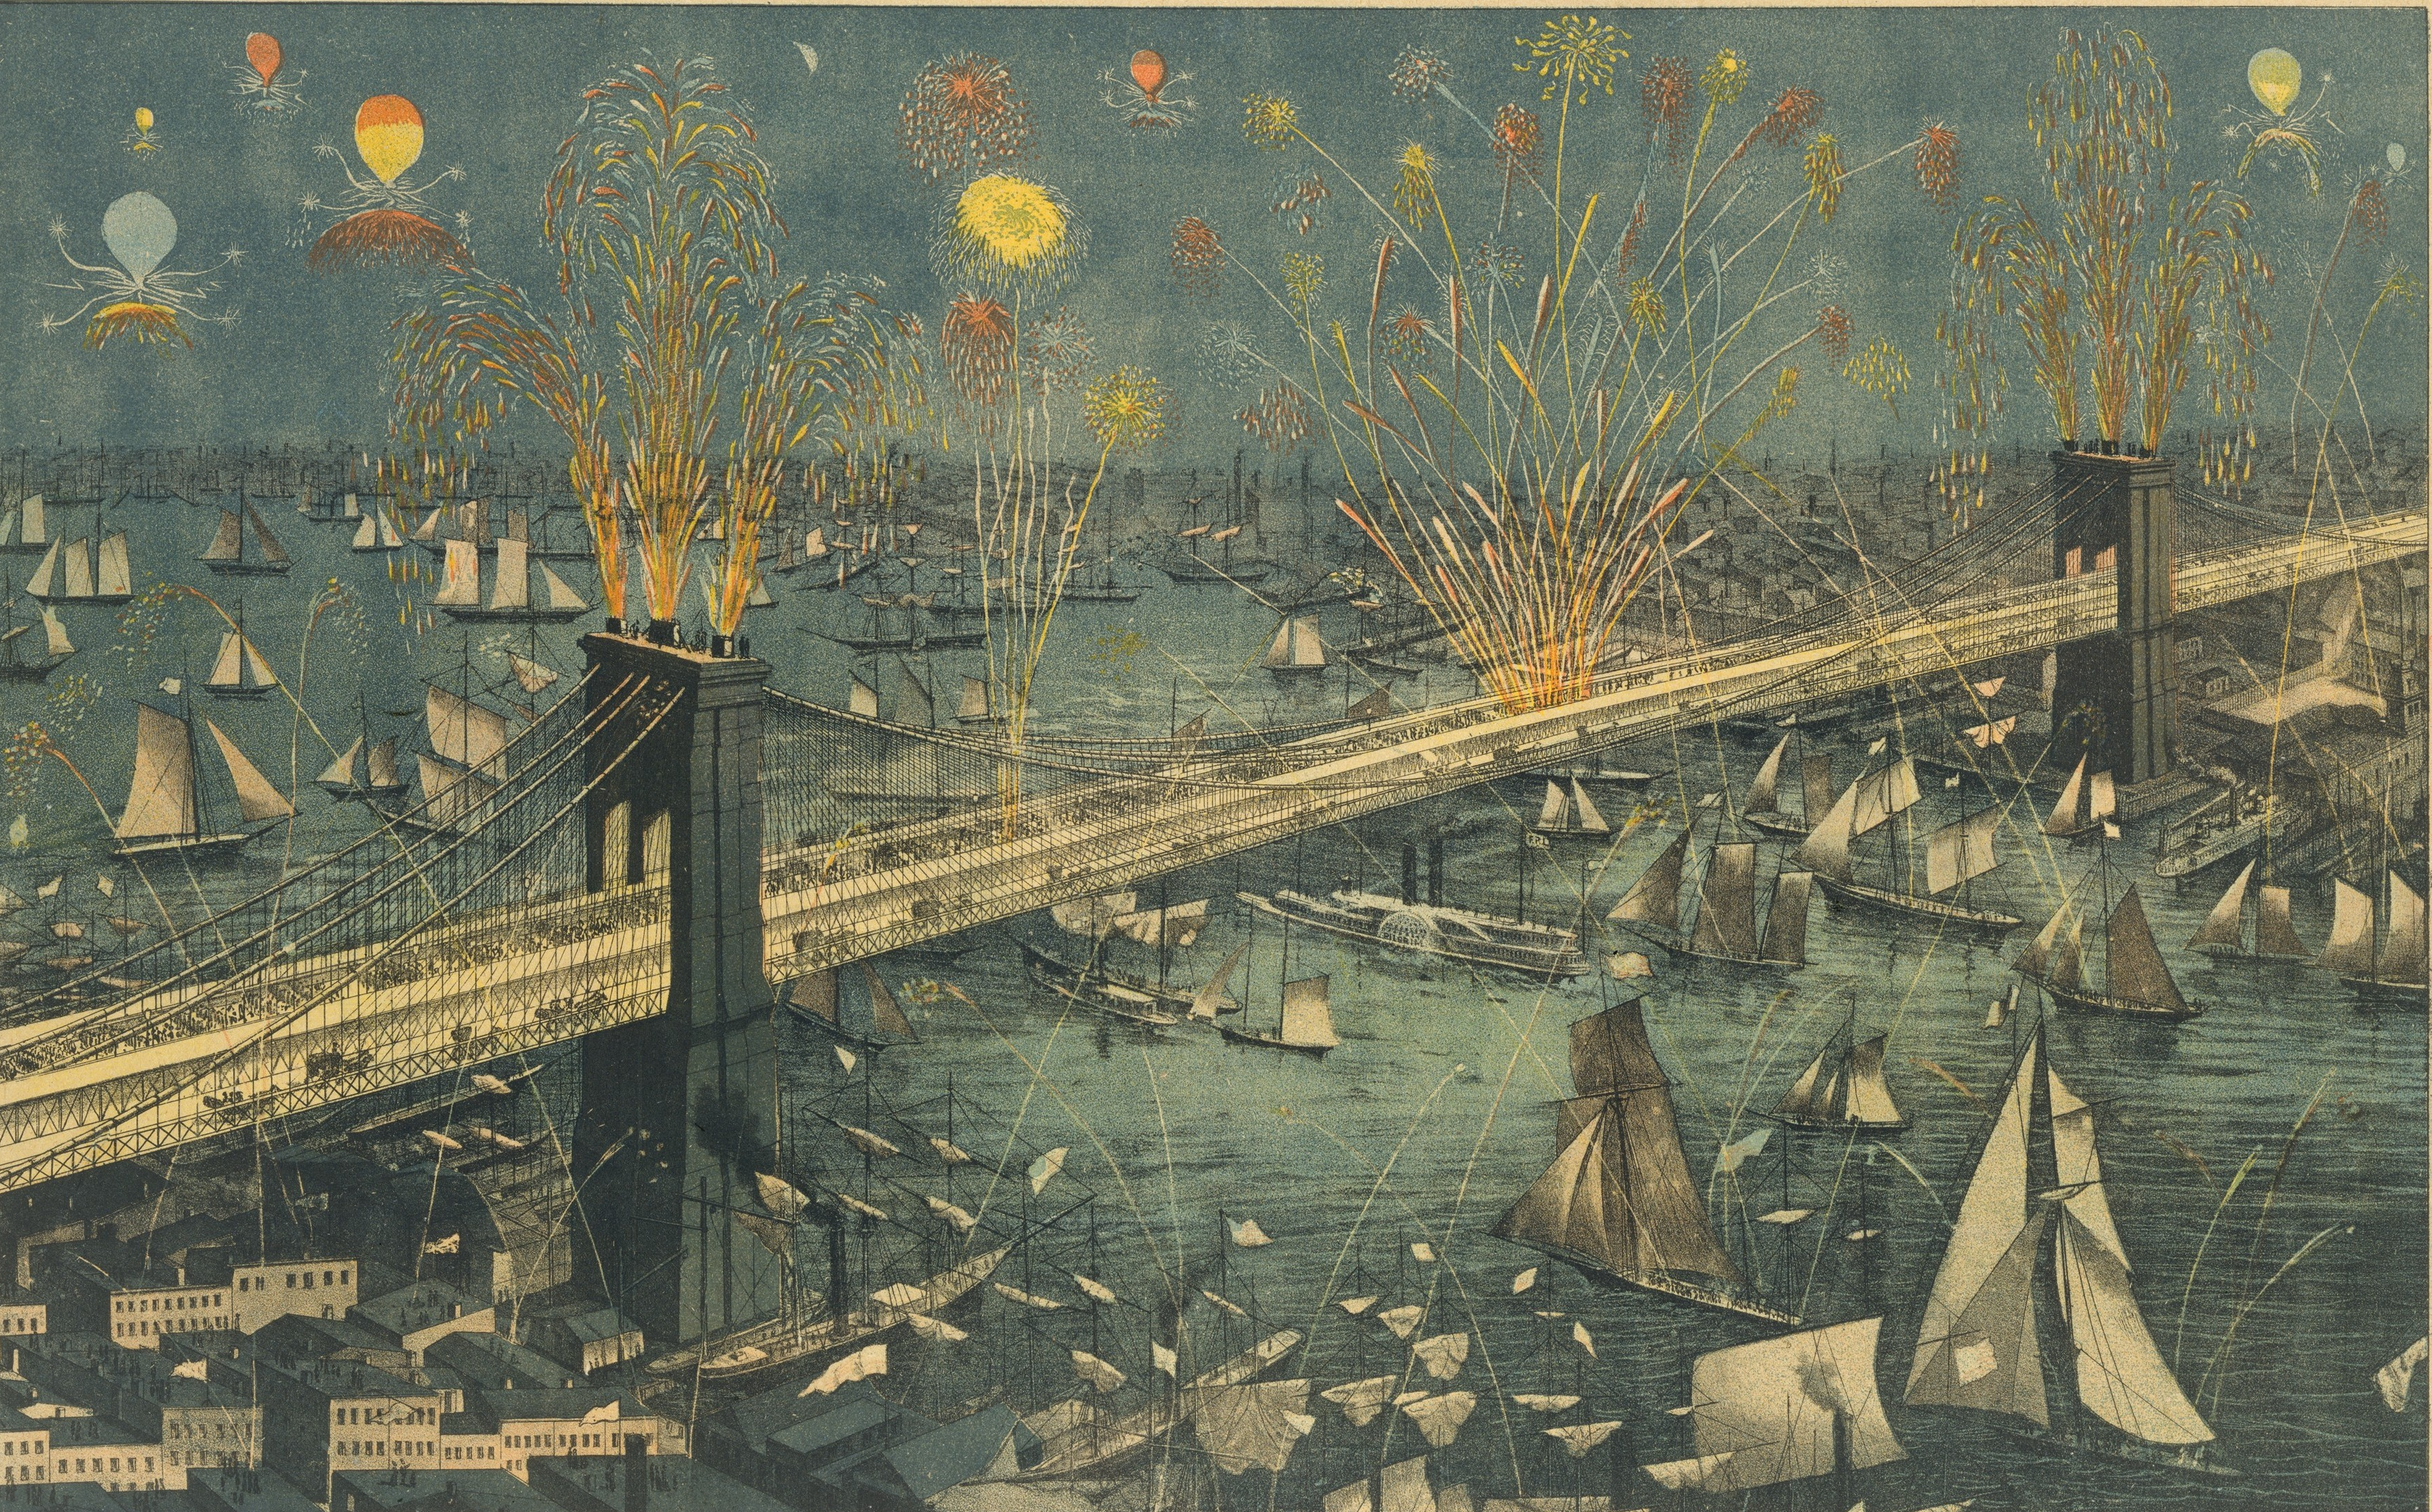 منظر لجسر نيويورك وبروكلِن العظيم، عرض للألعاب النارية في ليلة الافتتاح by غير معروف فنان - 1883 م - 38.9 في 62.4 سم 